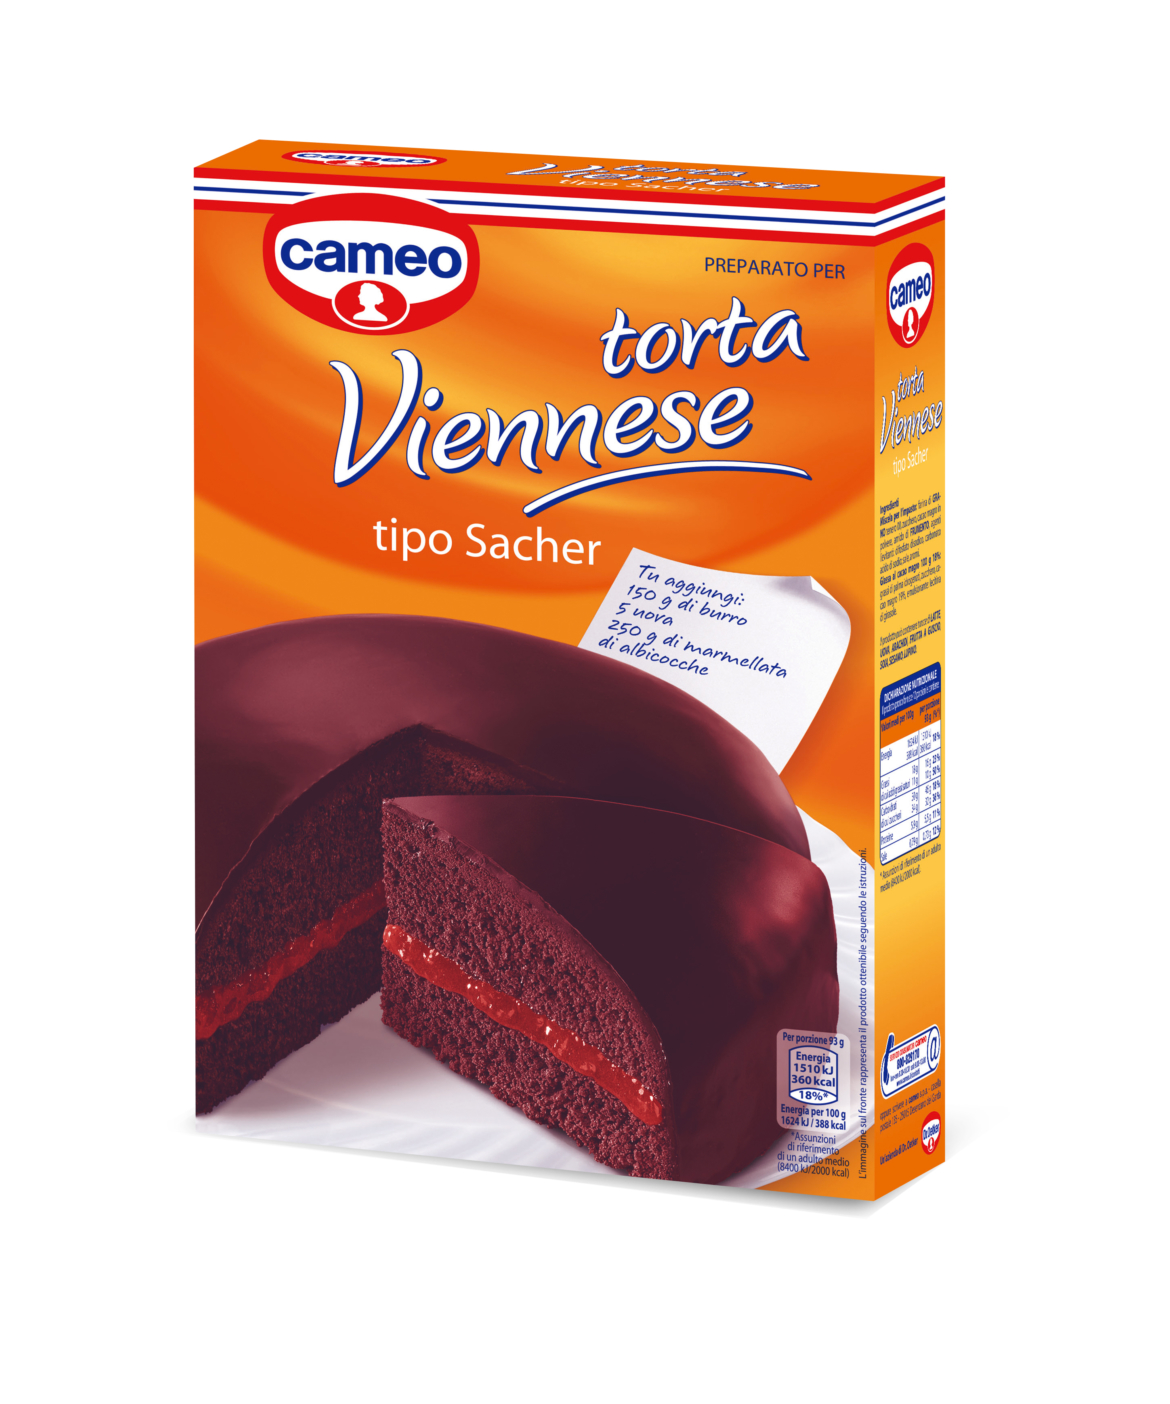 cameo Torta Viennese tipo Sacher , una prelibatezza al cioccolato